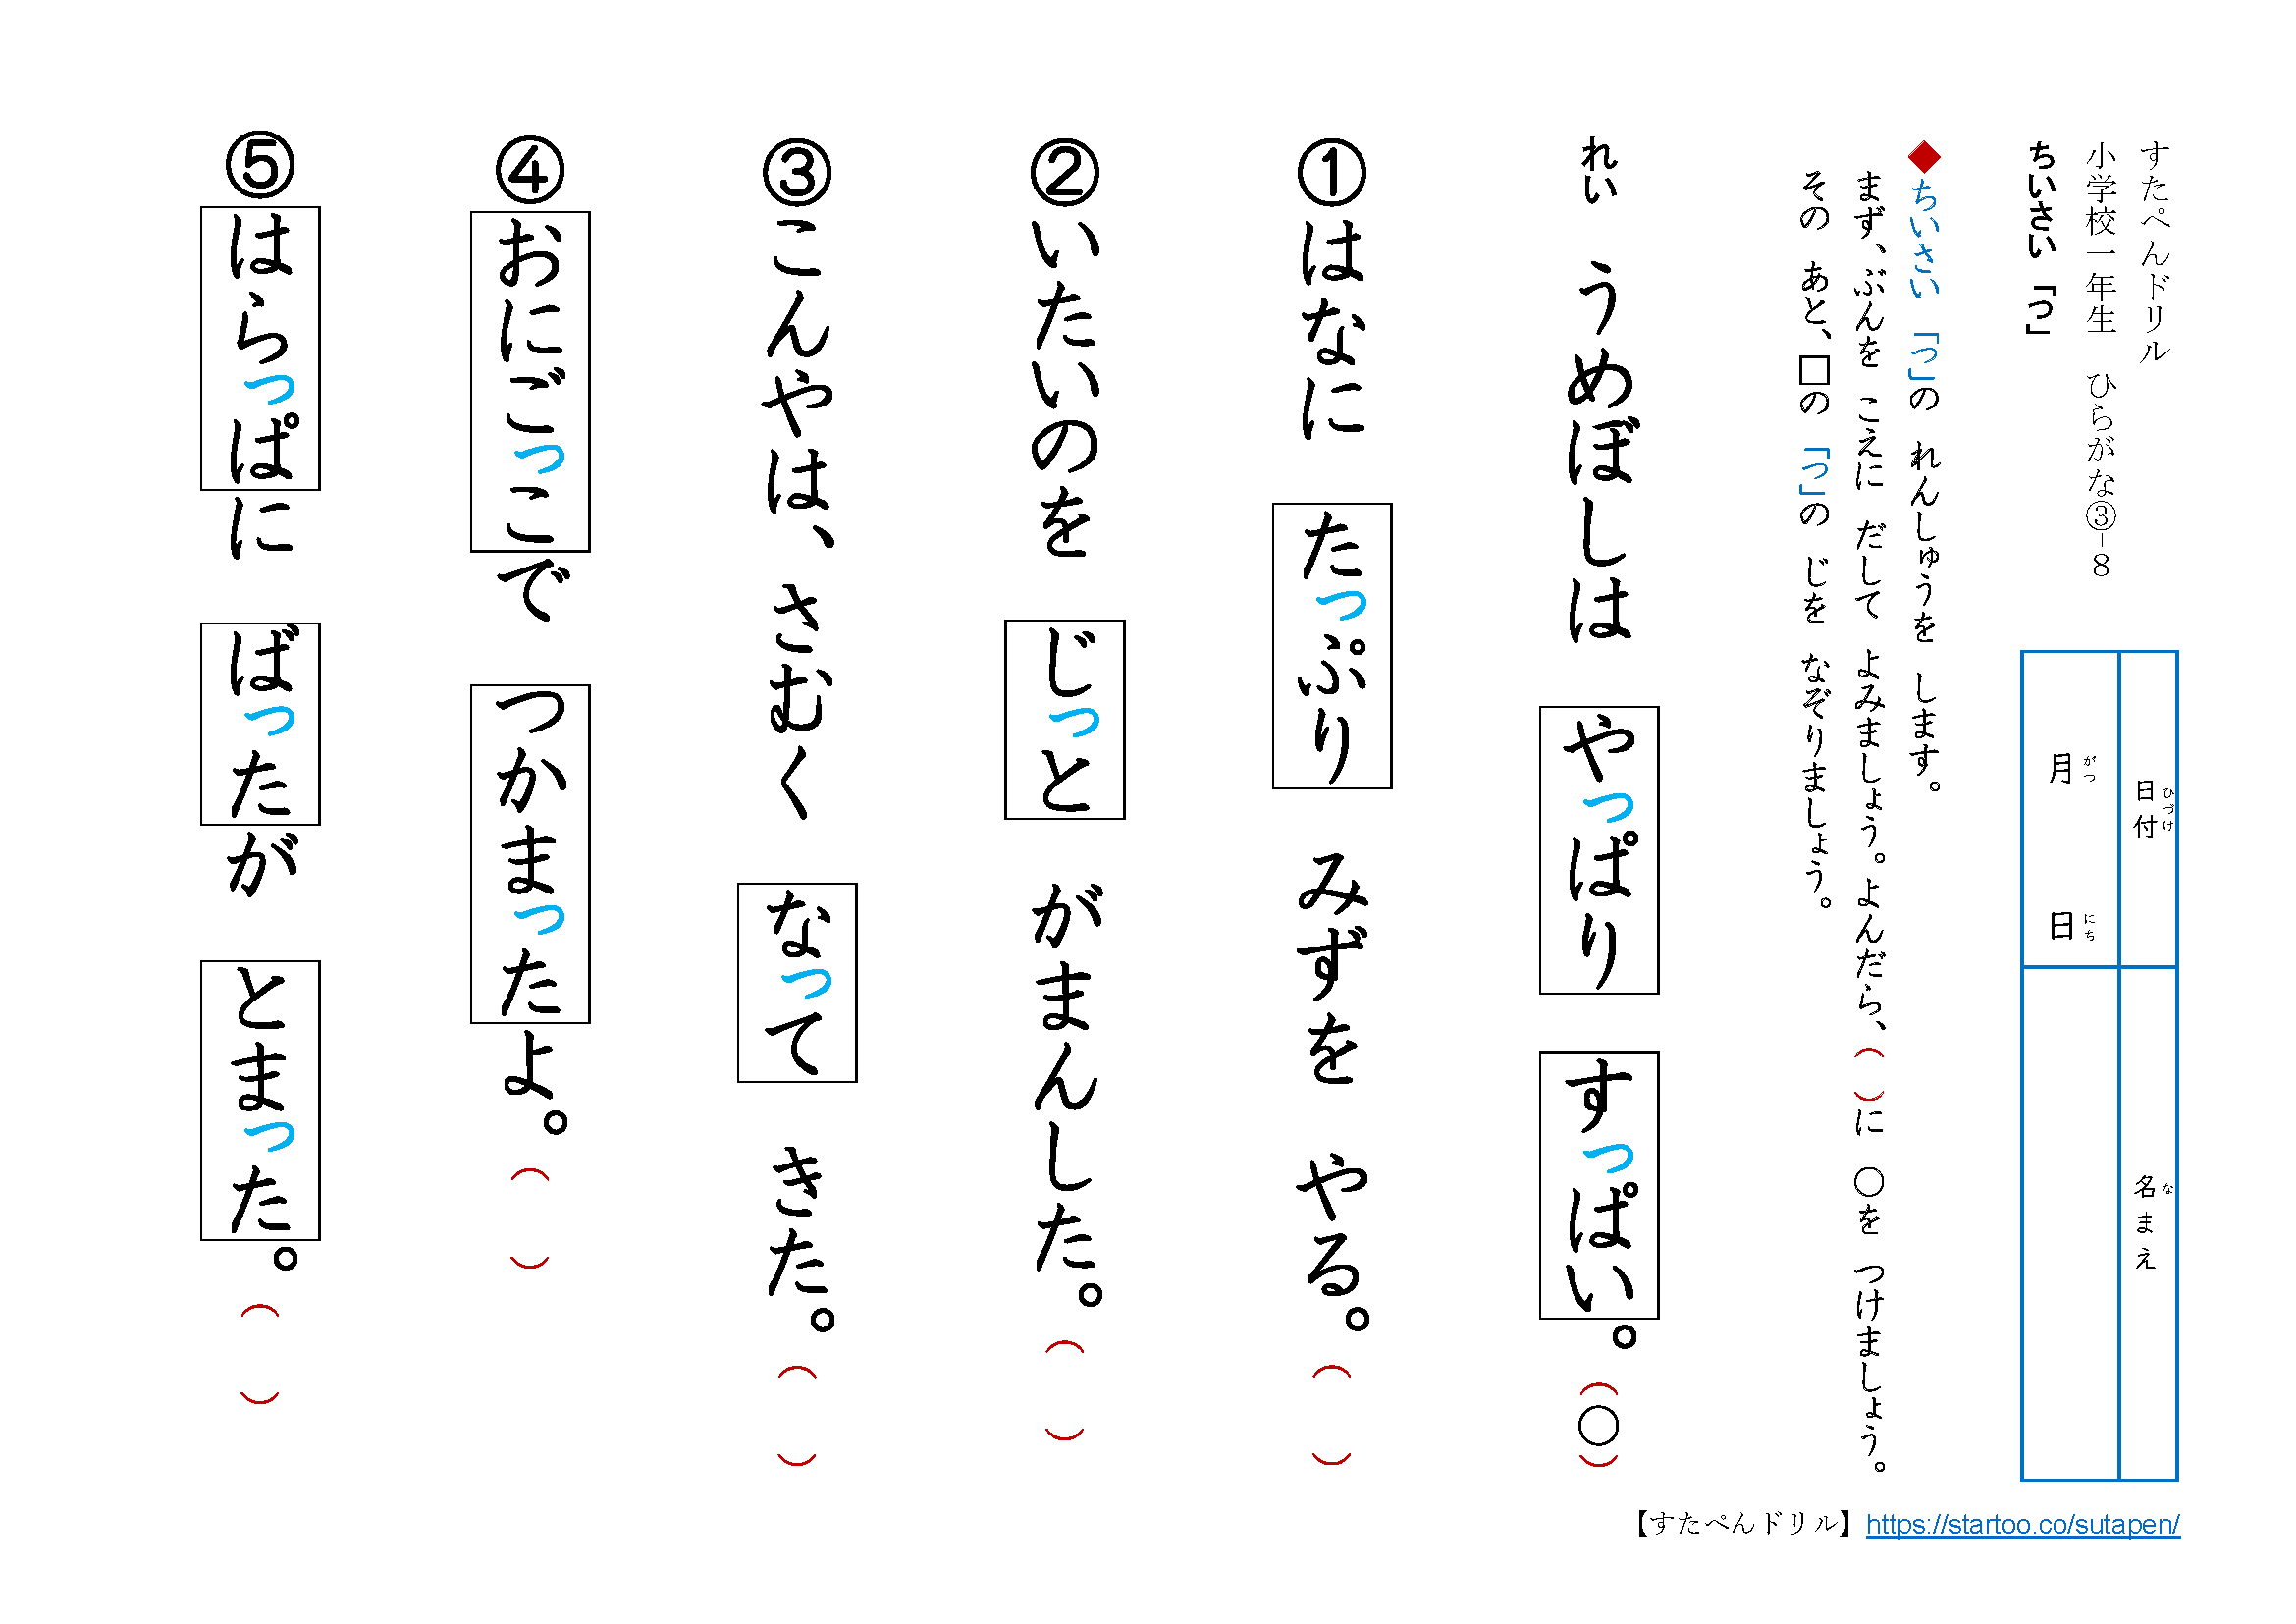 インタラクション 矩形 ワット 促音 ドリル Onsenkaihatsu Jp